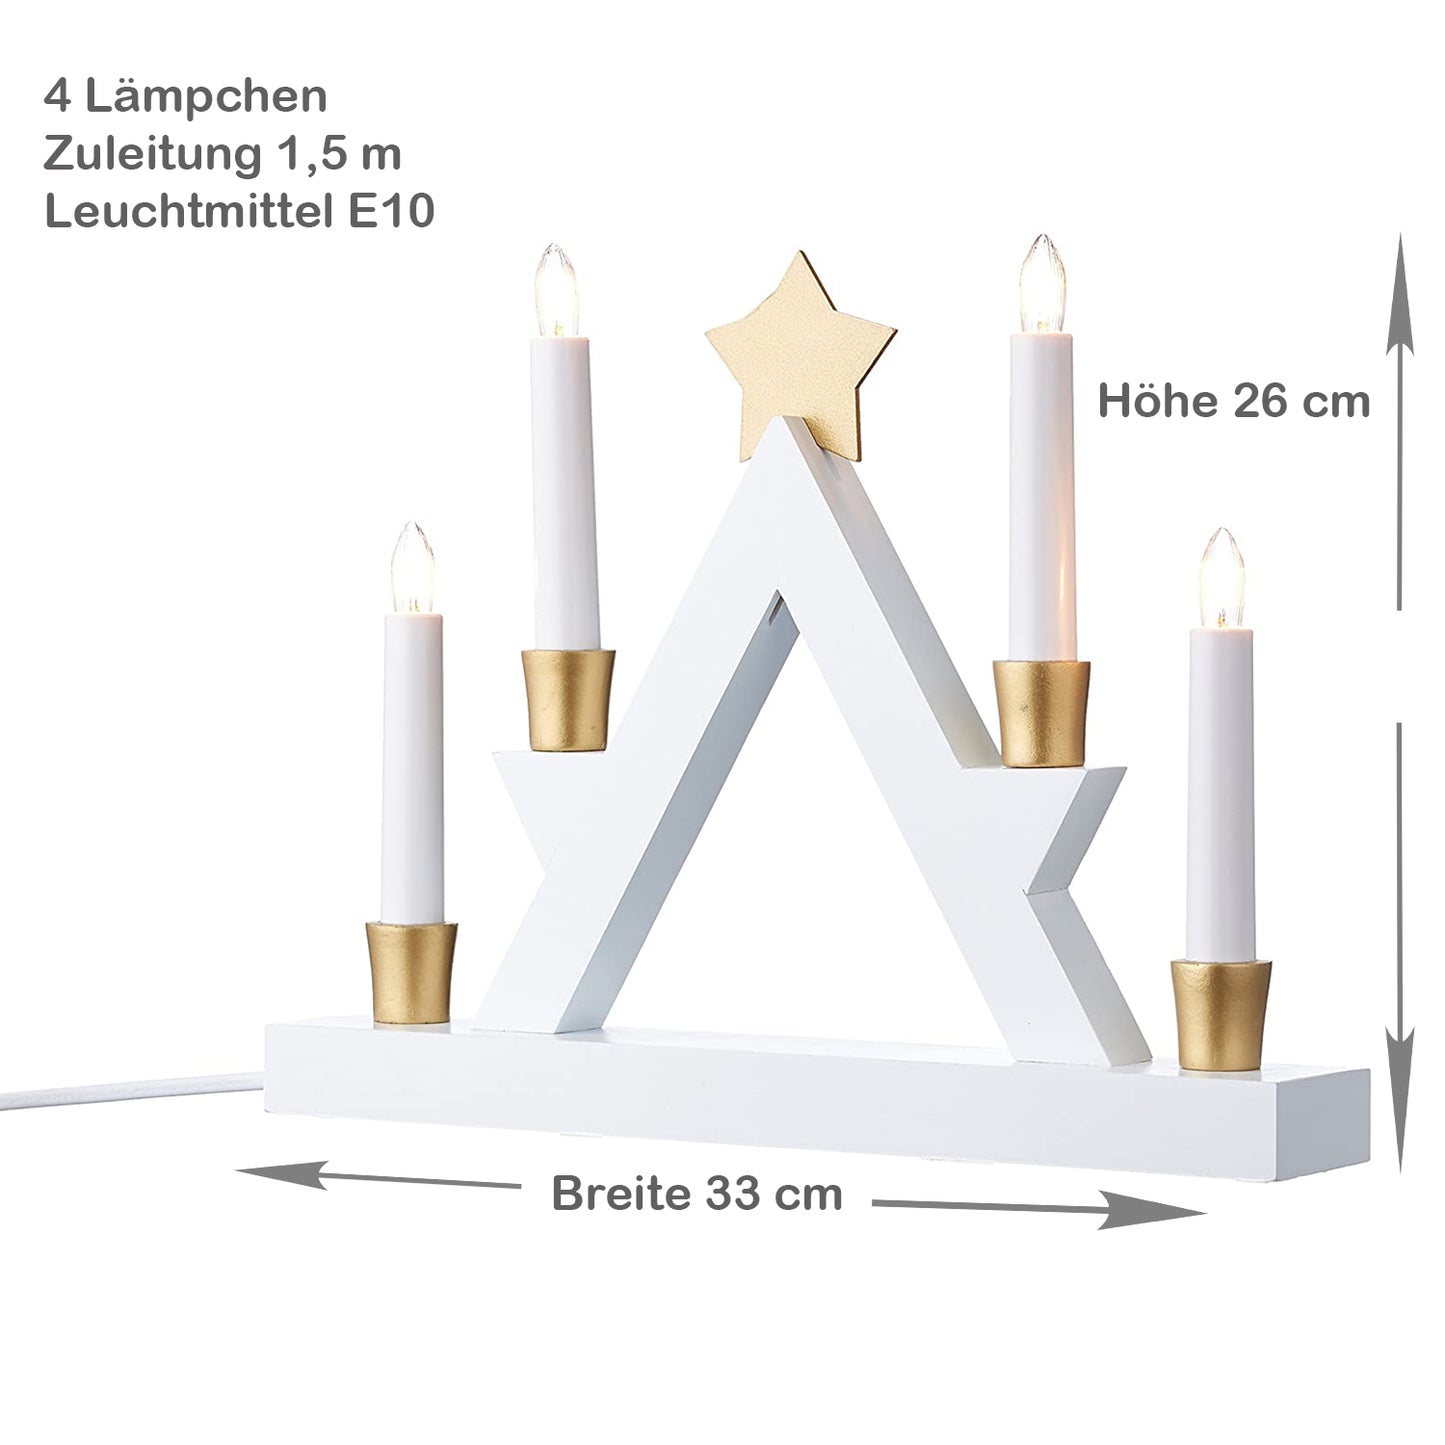 LED Fensterleuchter "Julle", 4-flammig, weiß/gold, BxH 33x26 cm